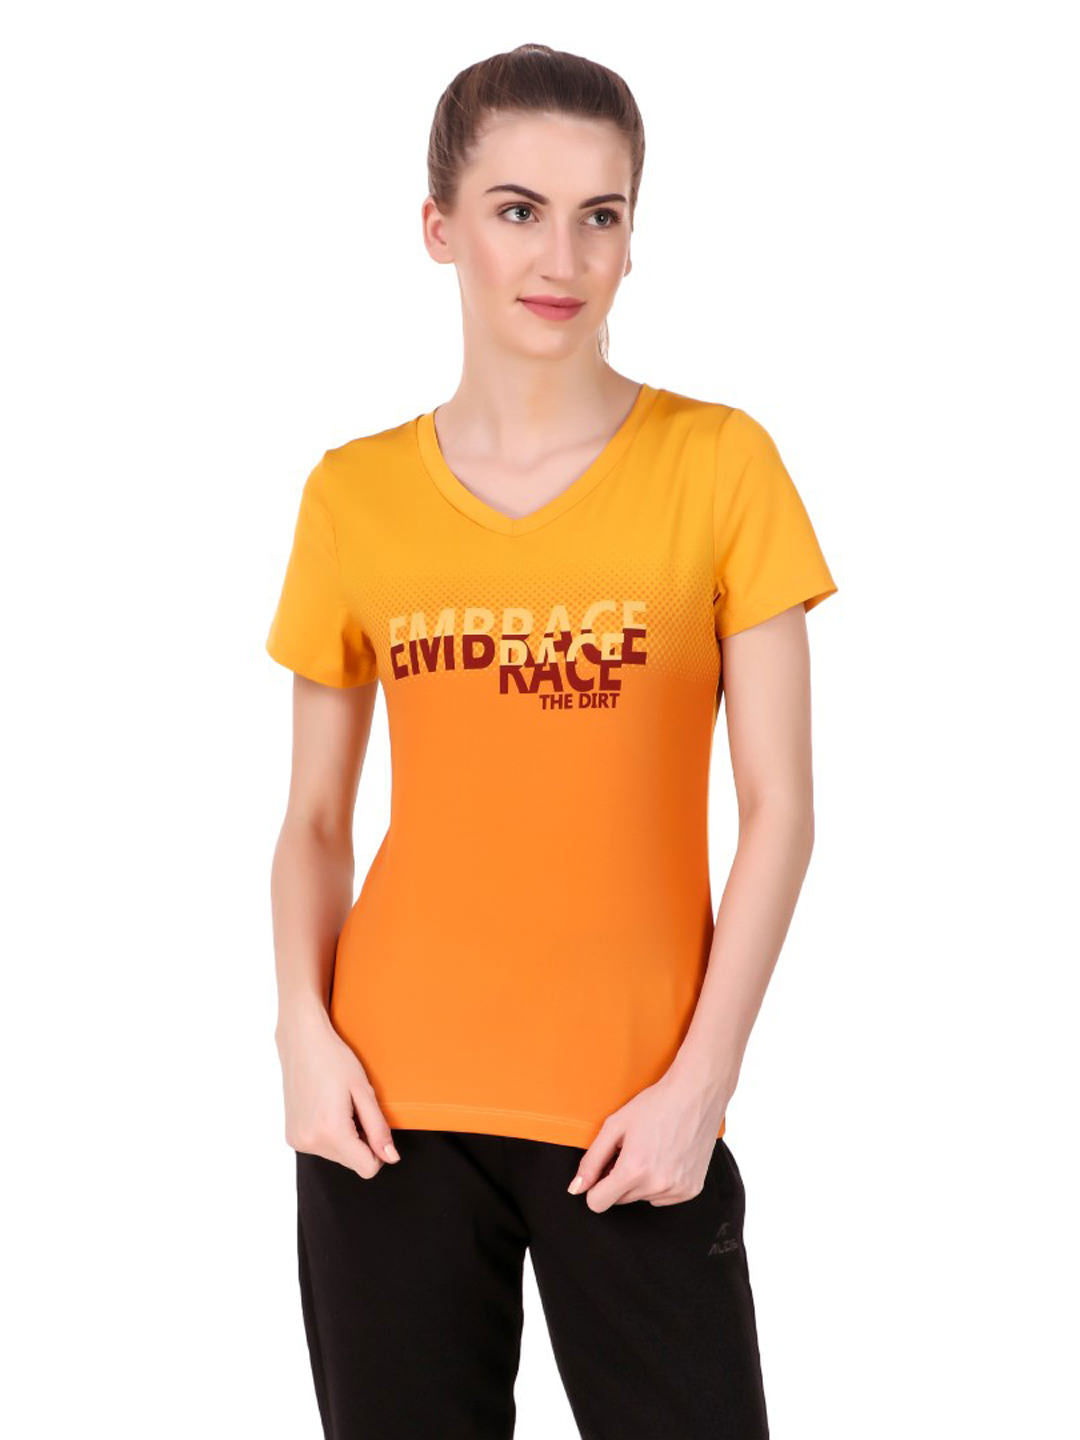 Alcis Women Mustard Yellow Printed V-Neck Running T-shirt